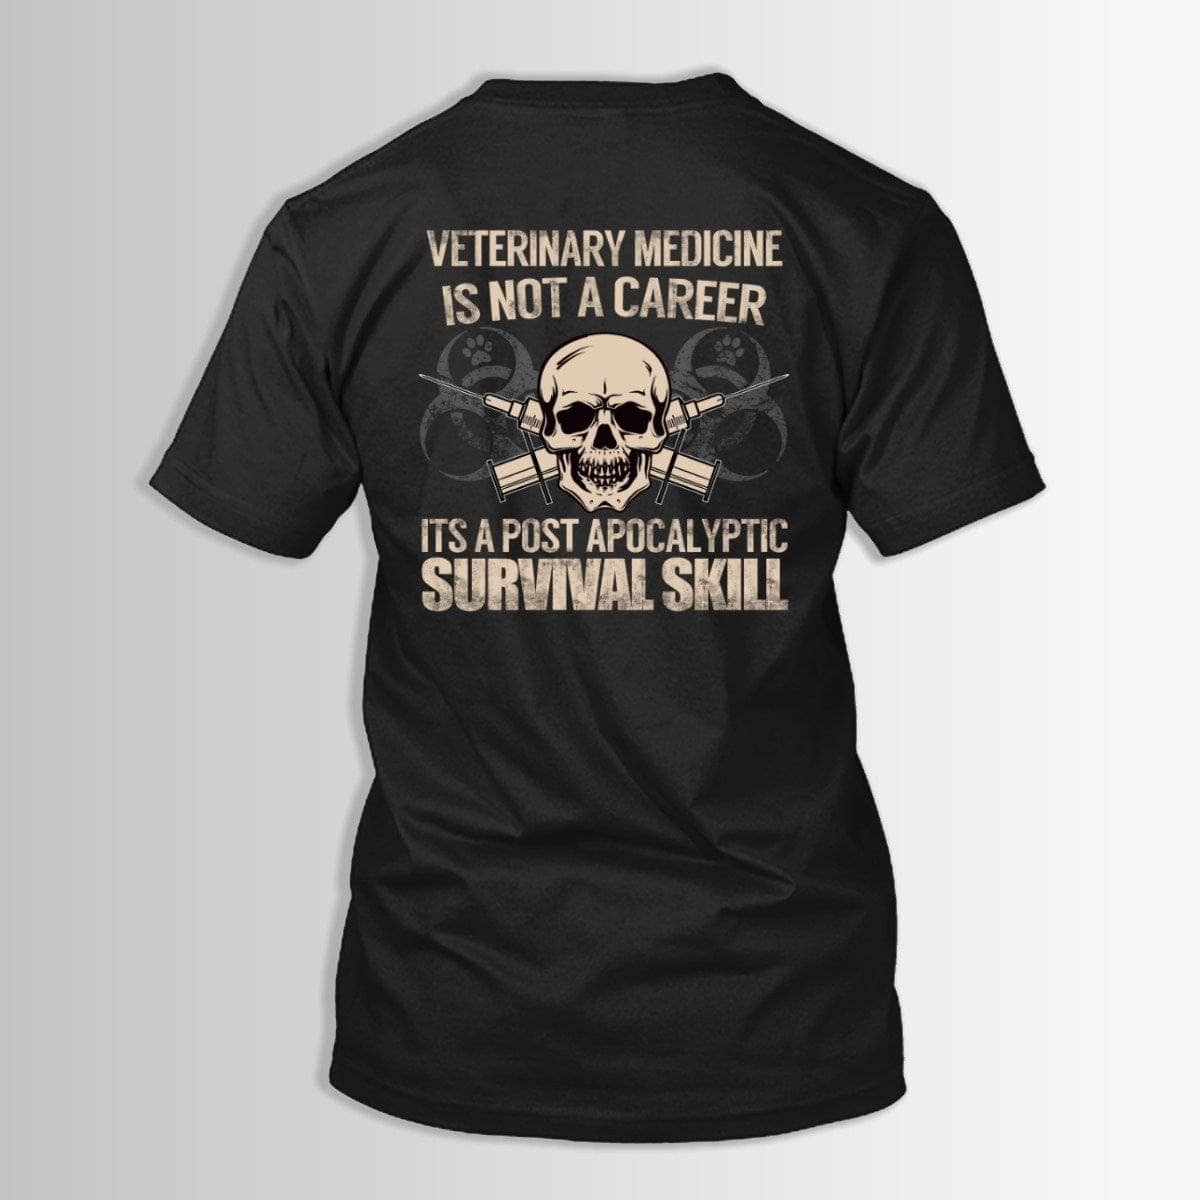 Vet Medicine Survival Skill